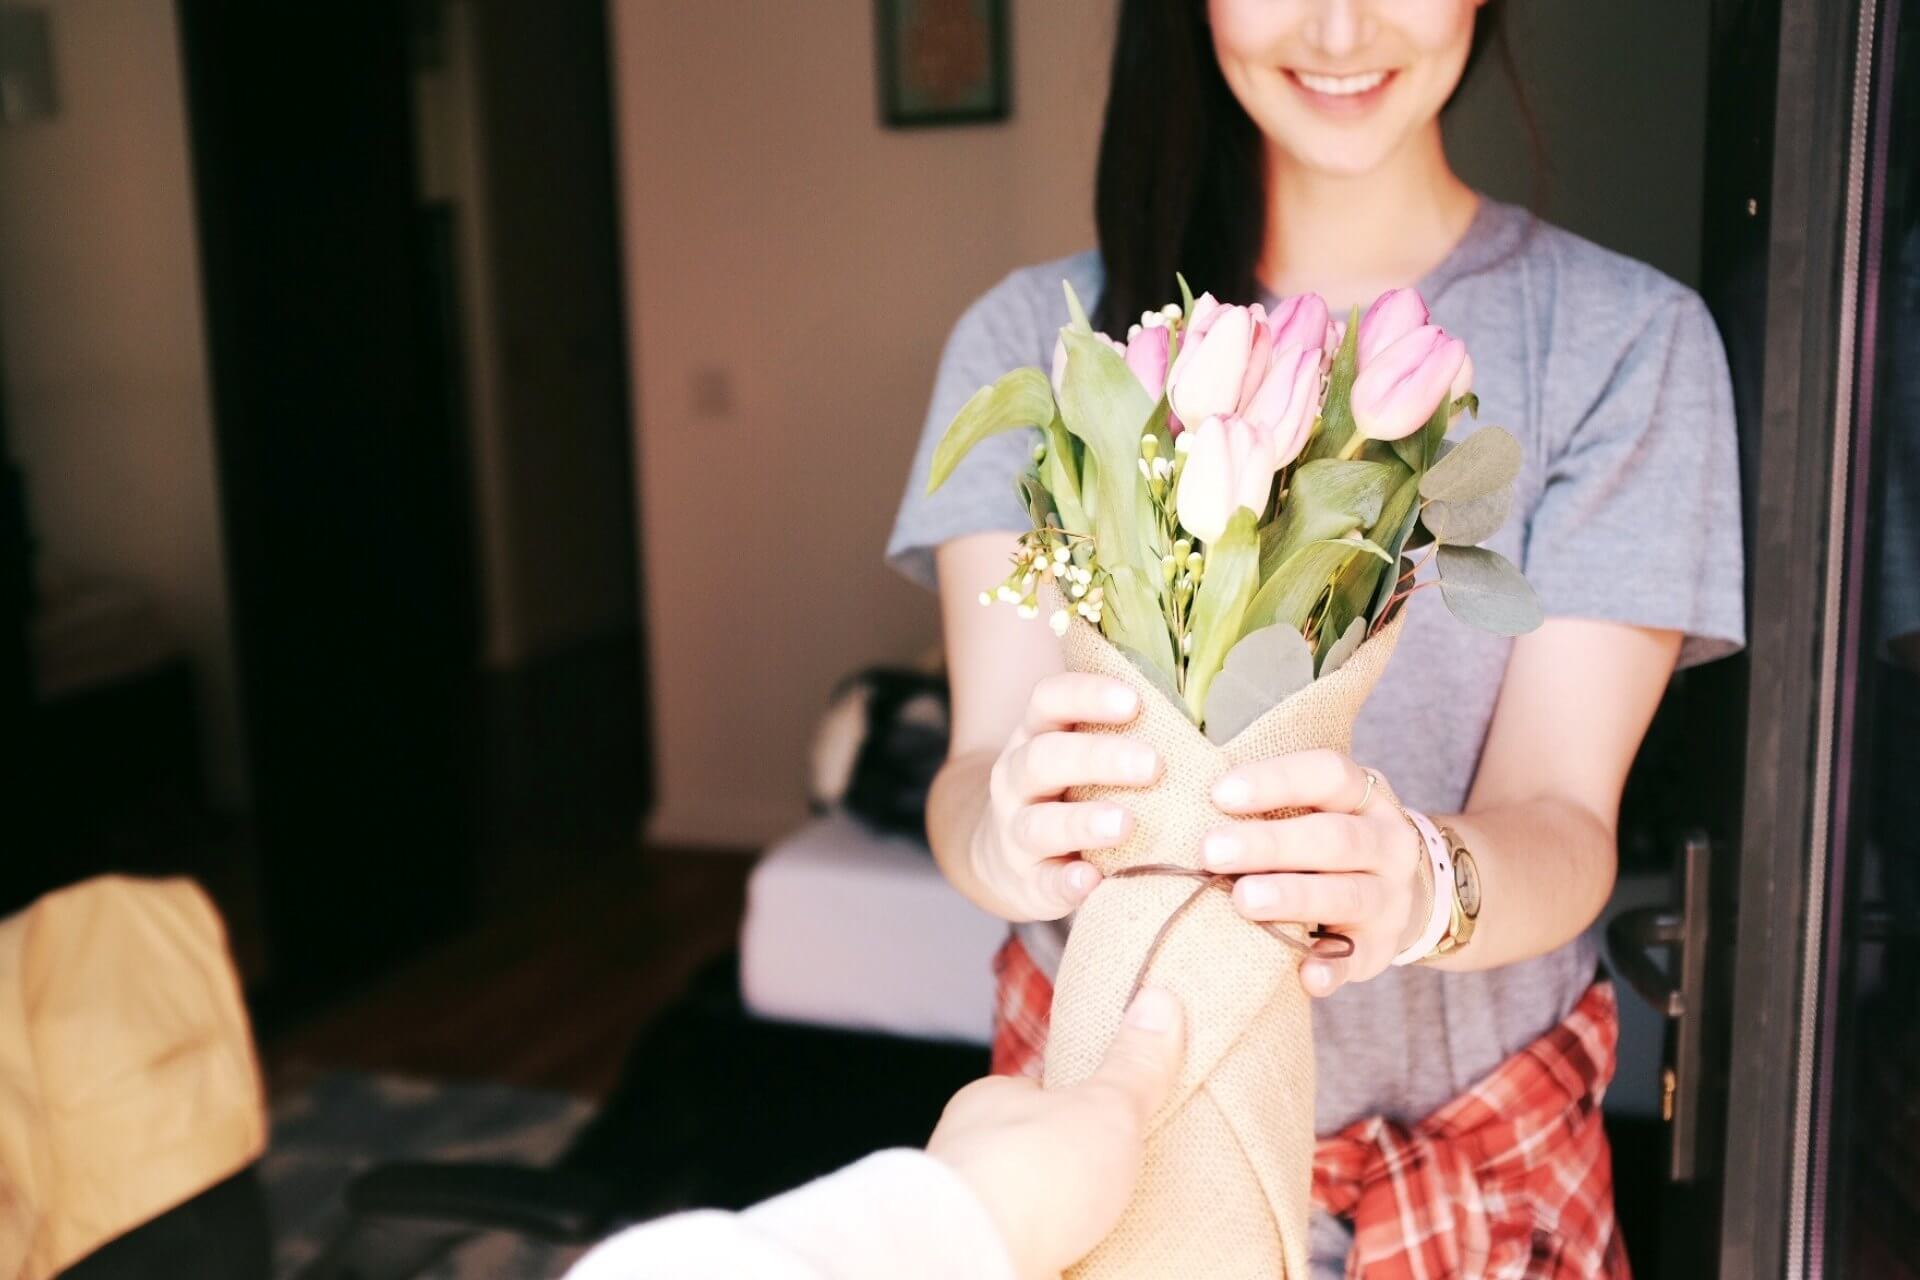 Freundin überraschen mit Blumen